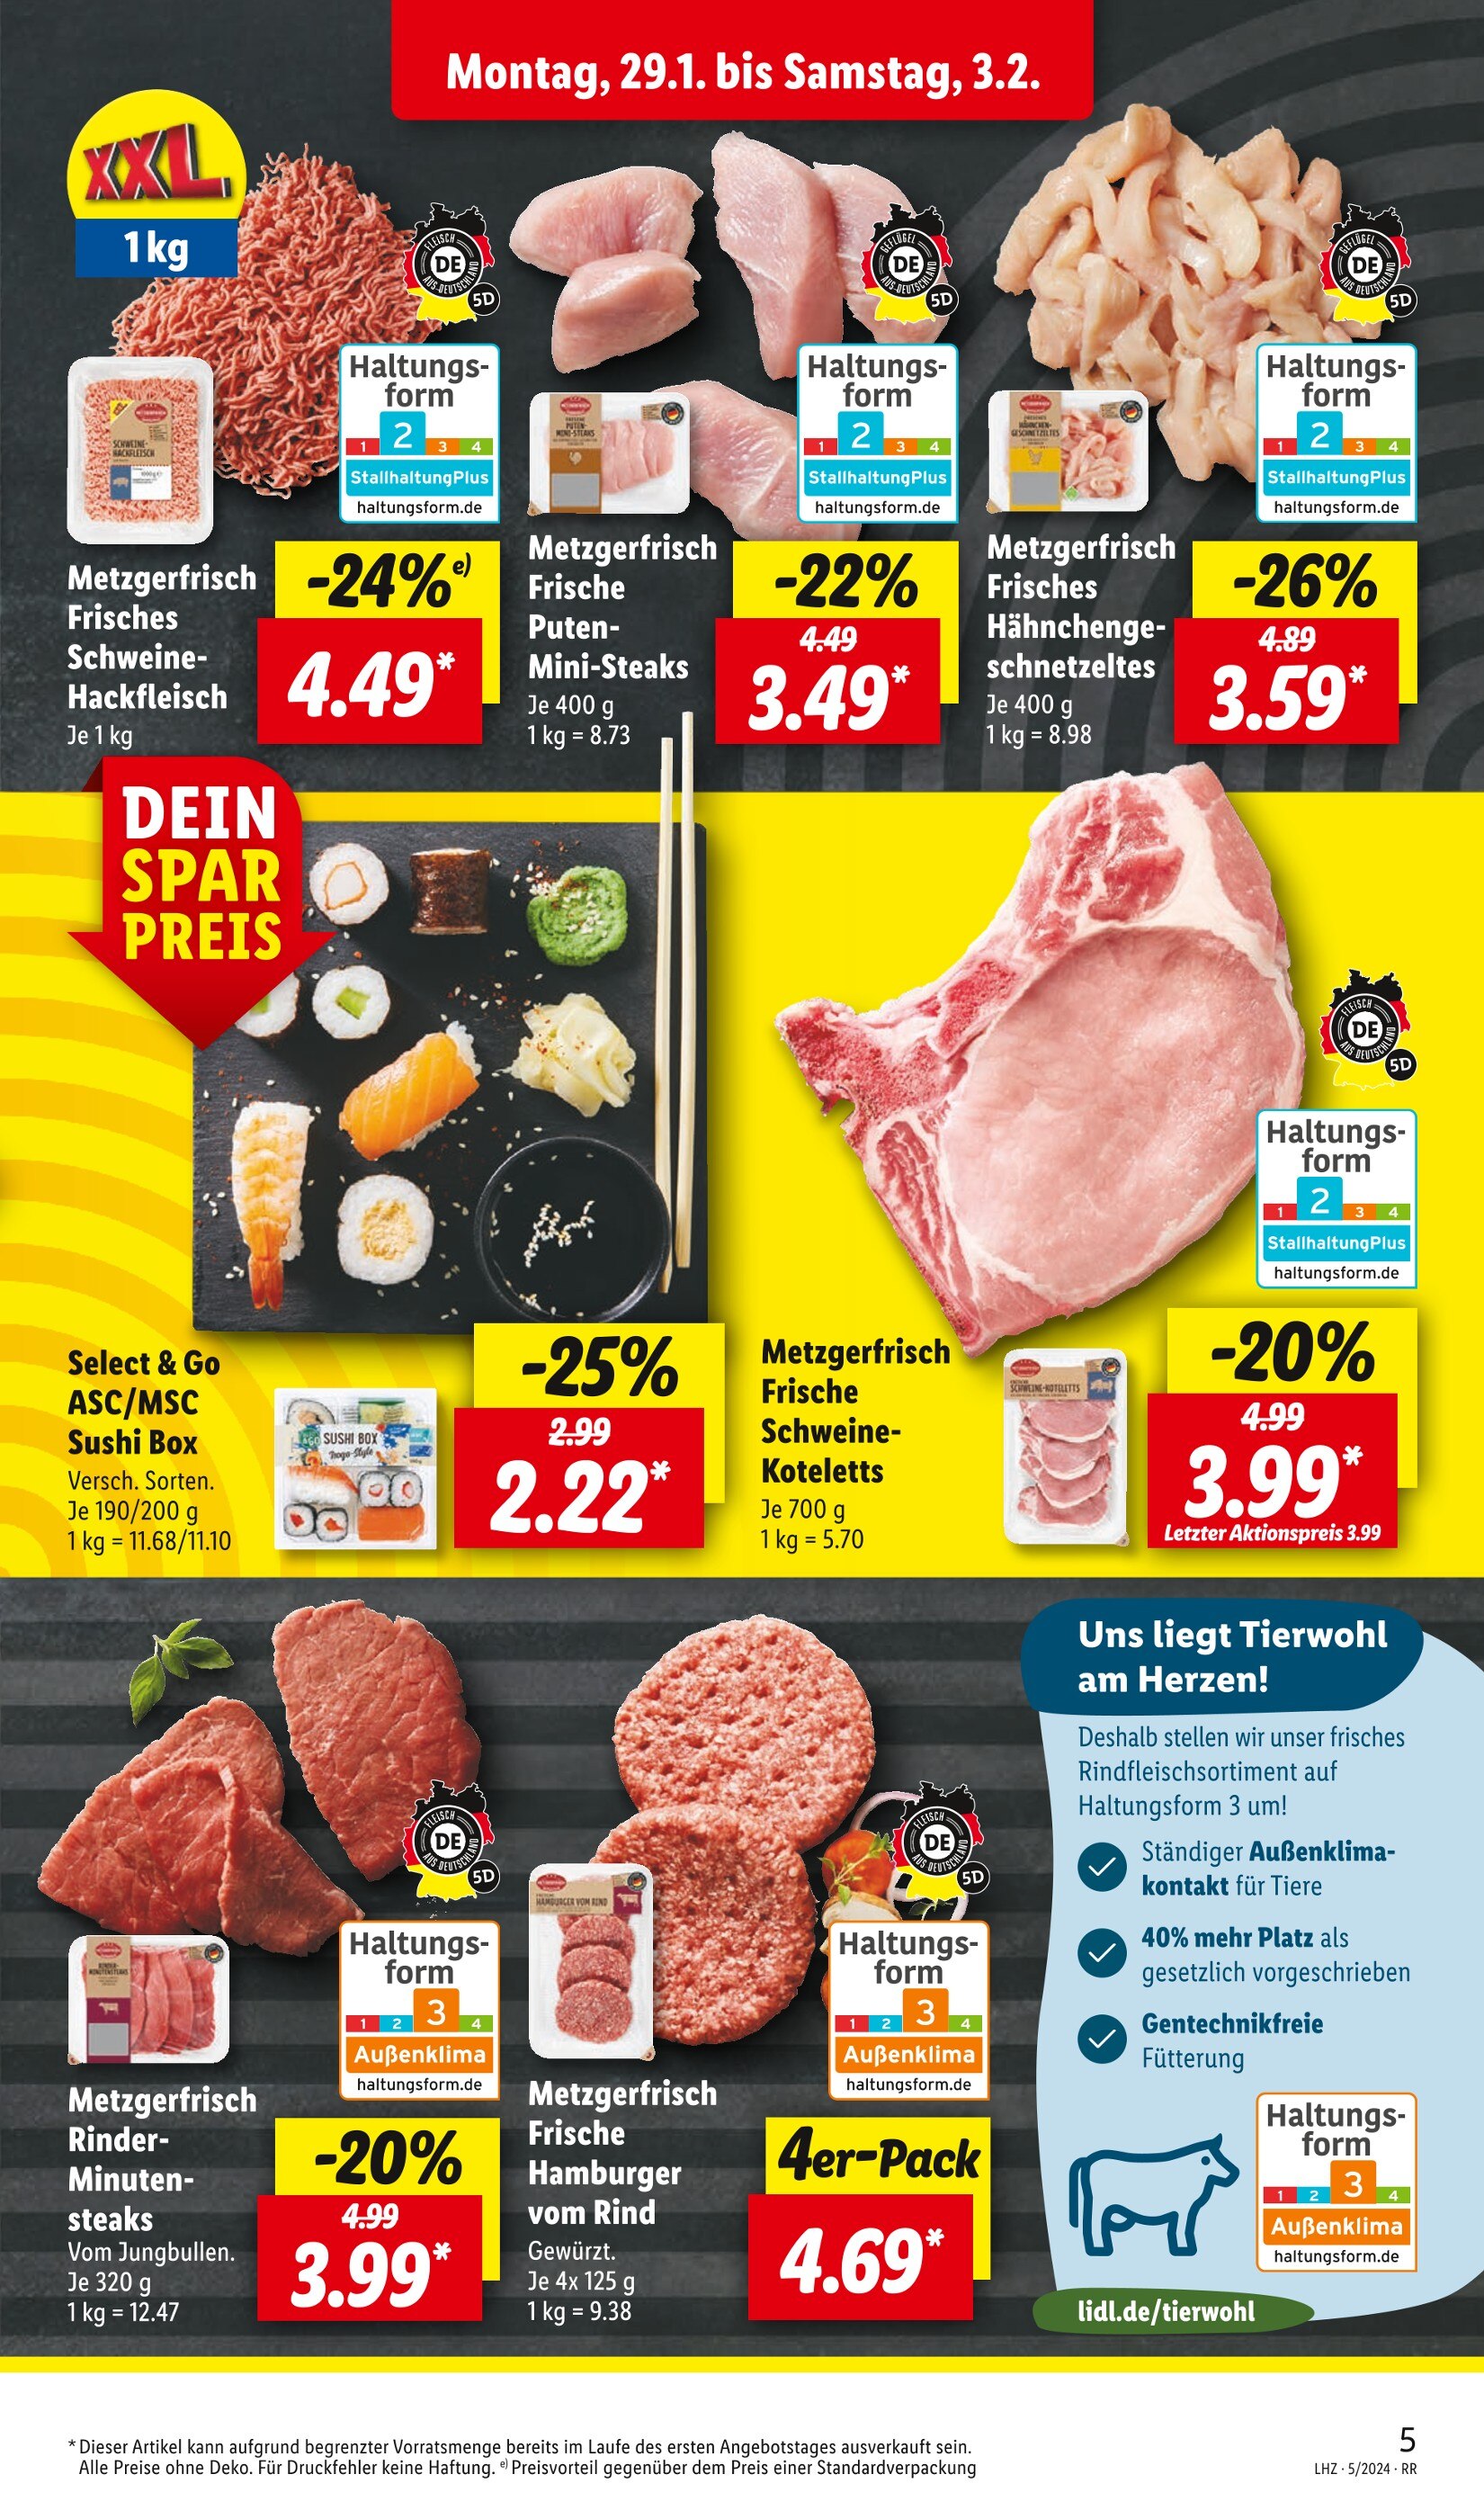 Steak Angebote in günstig jetzt 🔥 Gelsenkirchen kaufen! 